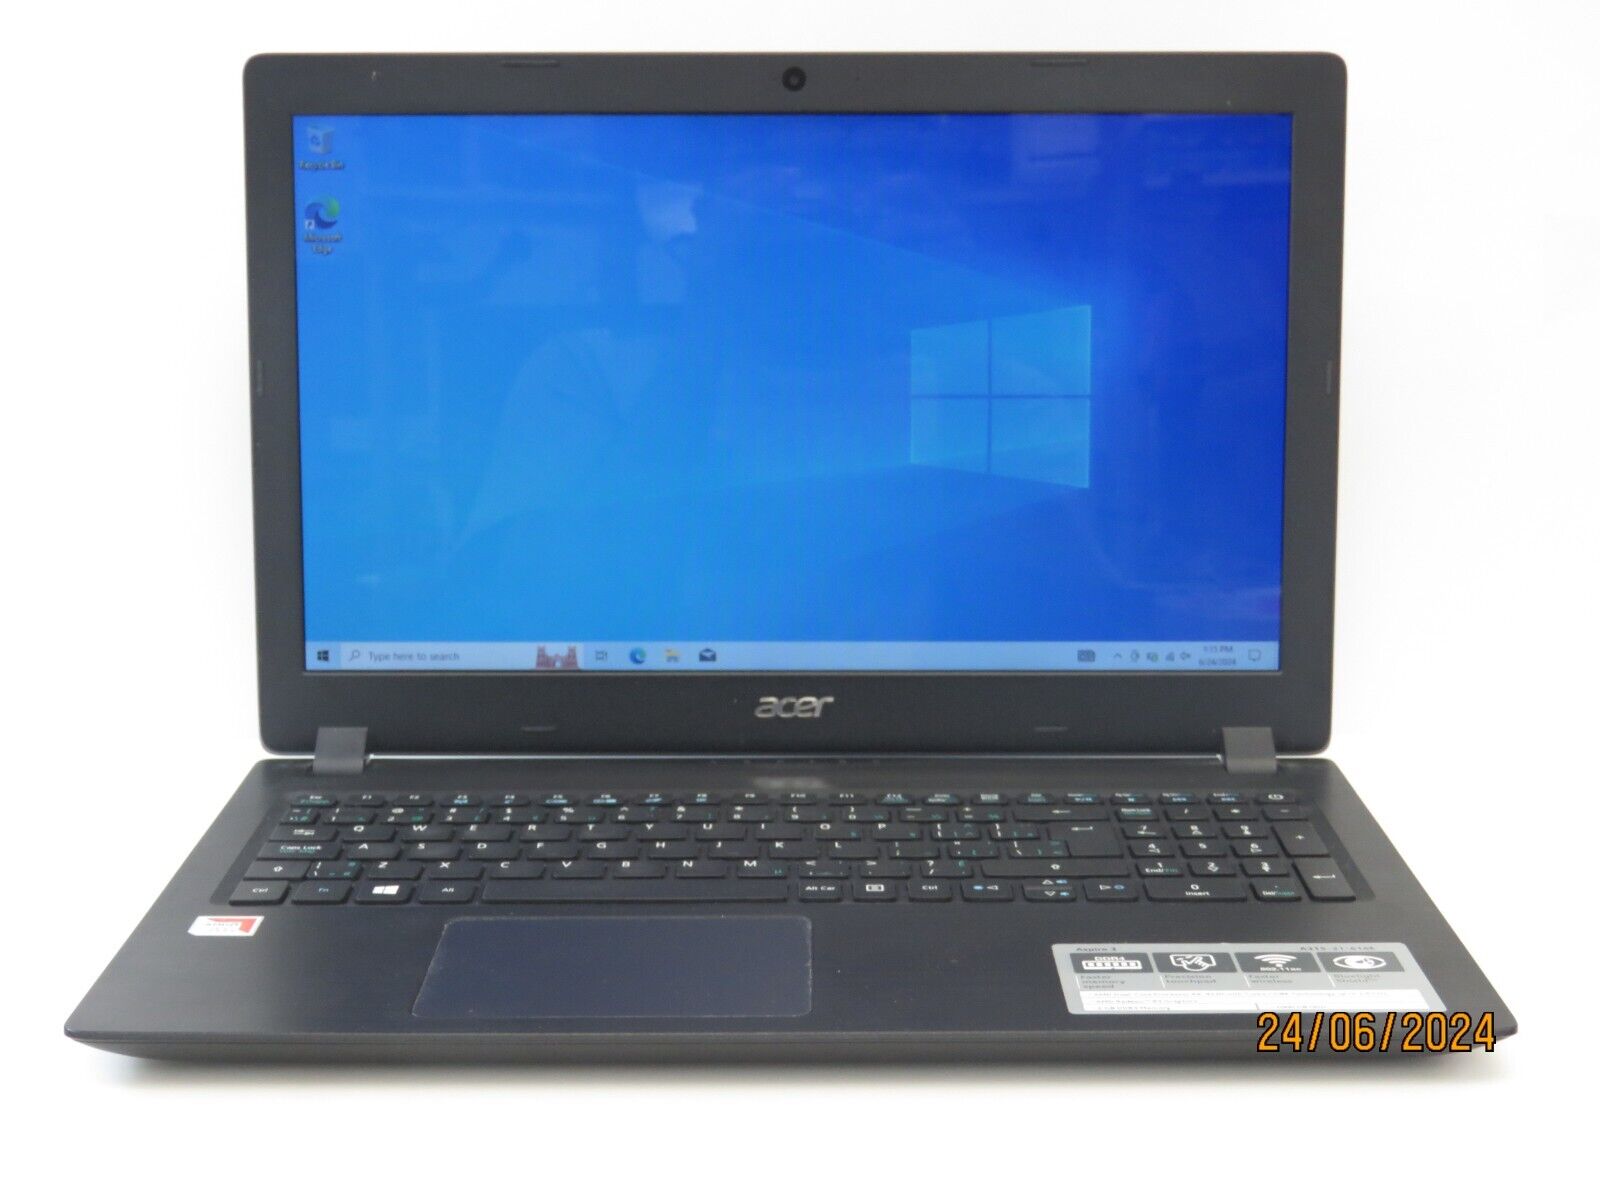 Acer A315-21-62U1 Aspire 3 Laptop 15.6-inch AMD A6-9220 6GB RAM 1TB HDD [S2]